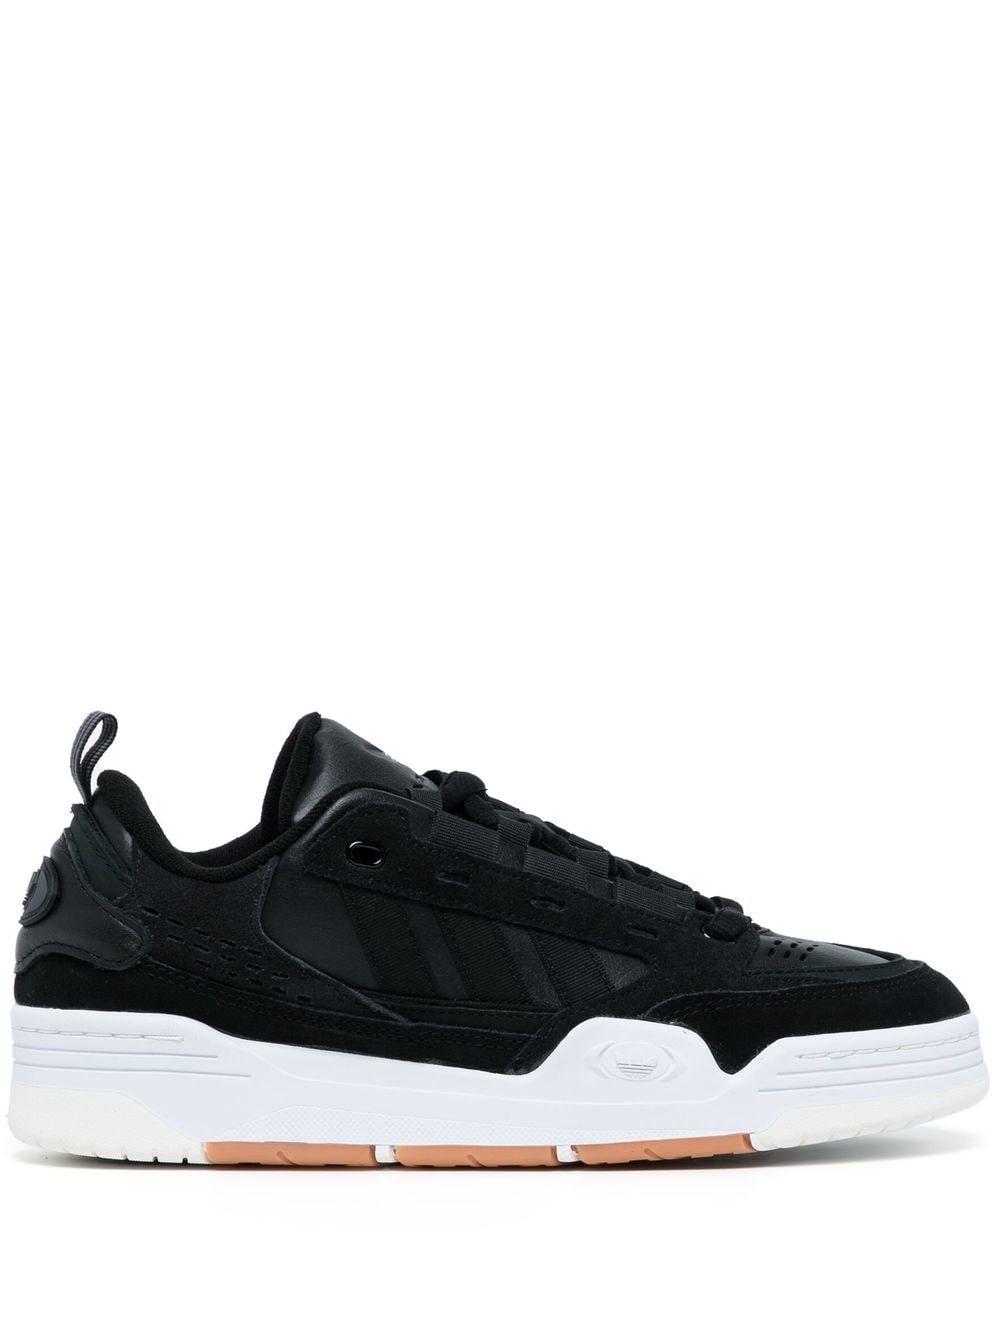 adidas Originals Adi 2000 Low-top Sneakers in Black for Men | Lyst